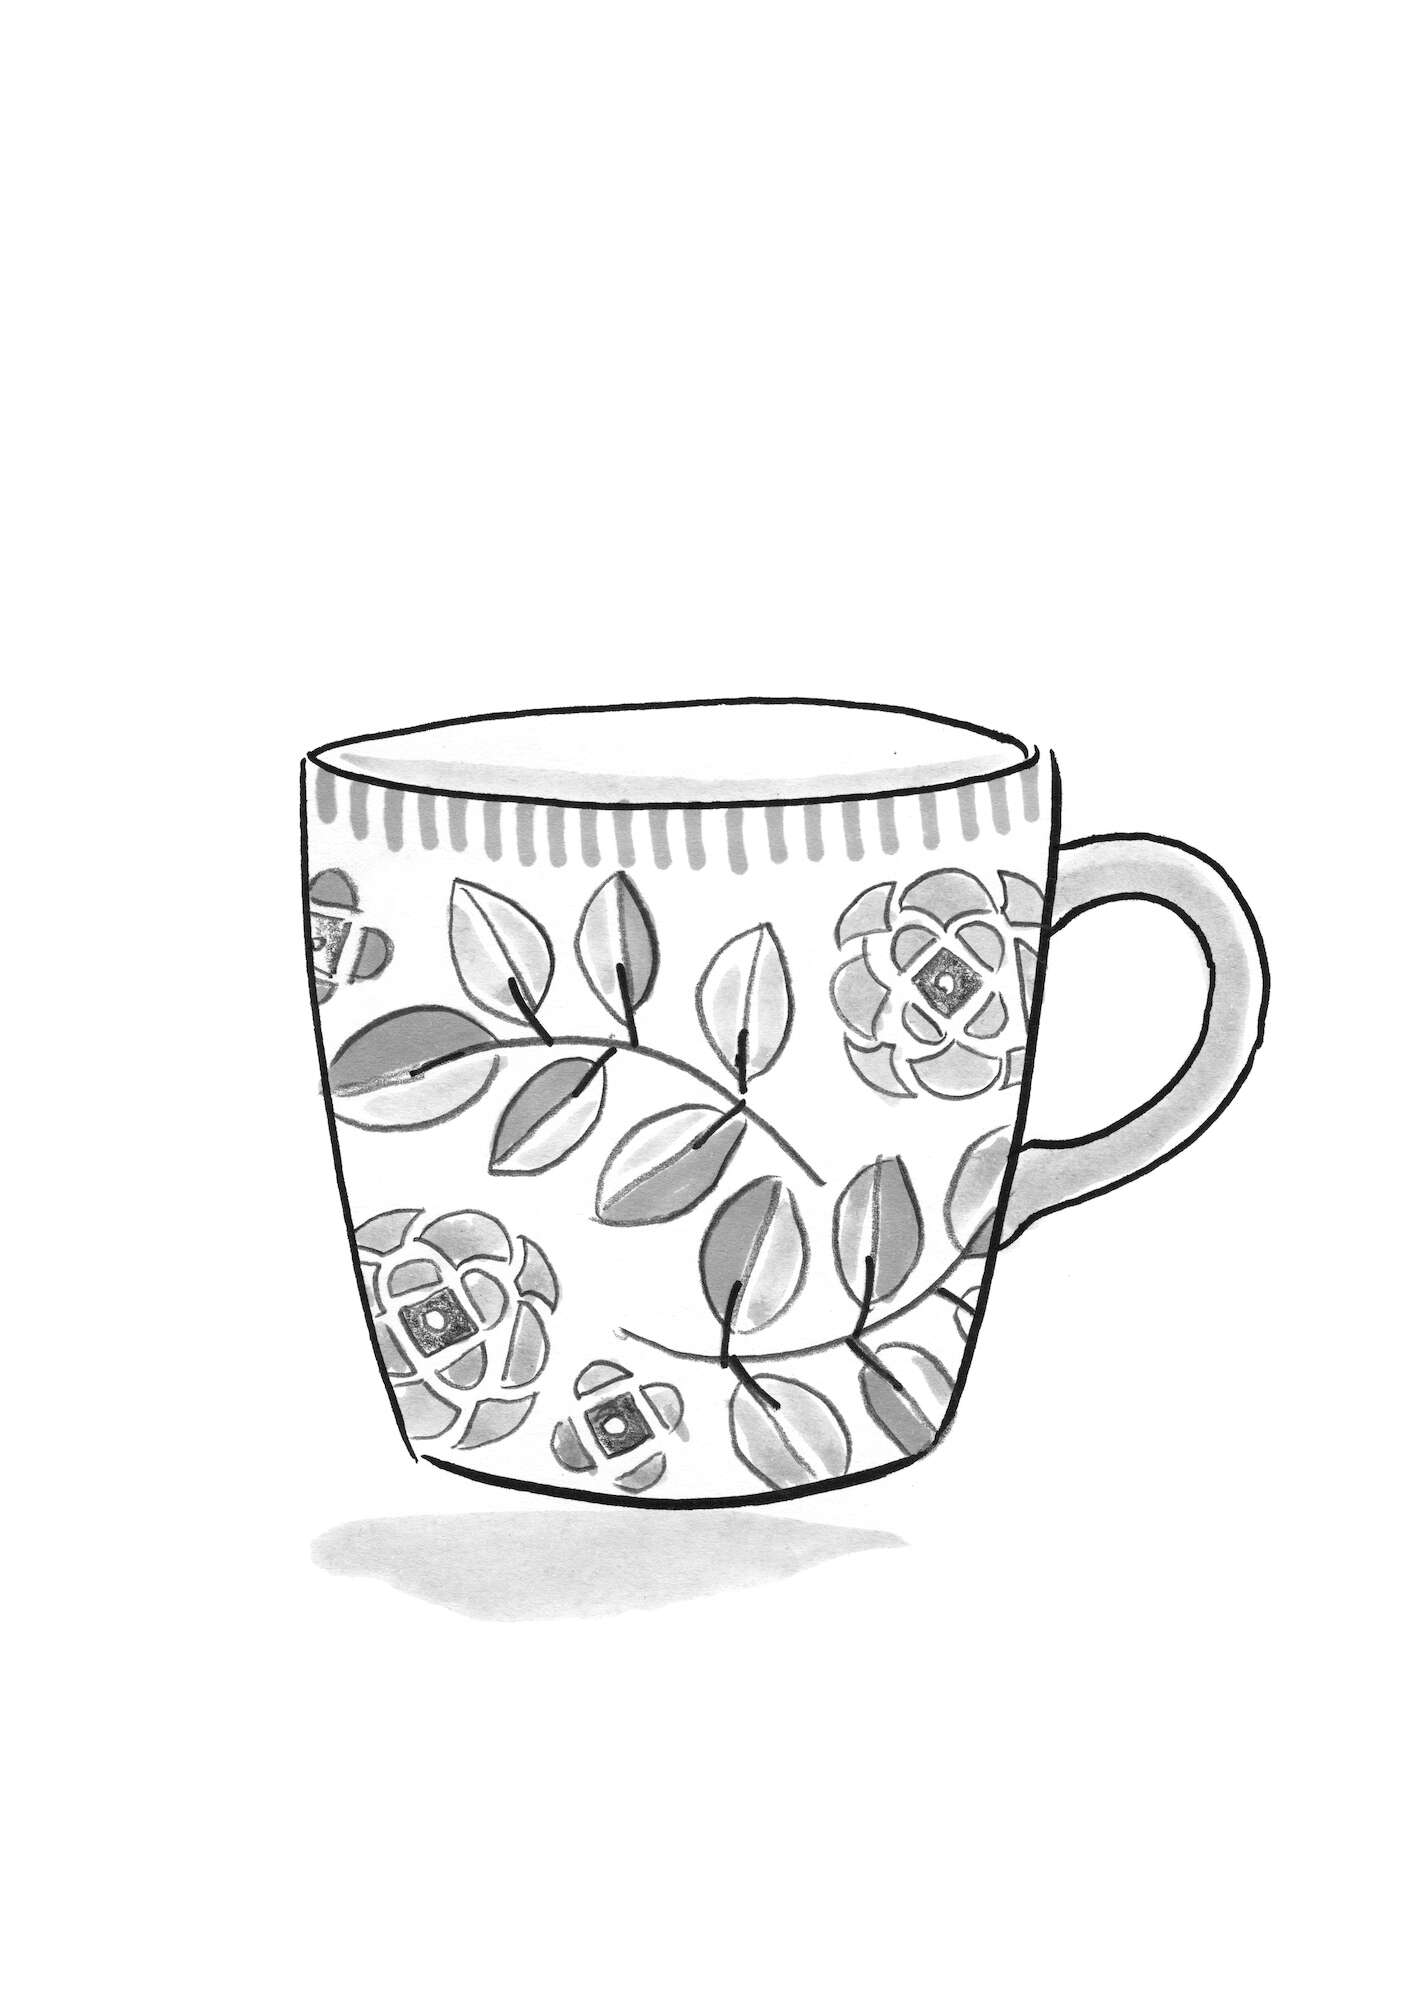  “Tulsi” ceramic mug